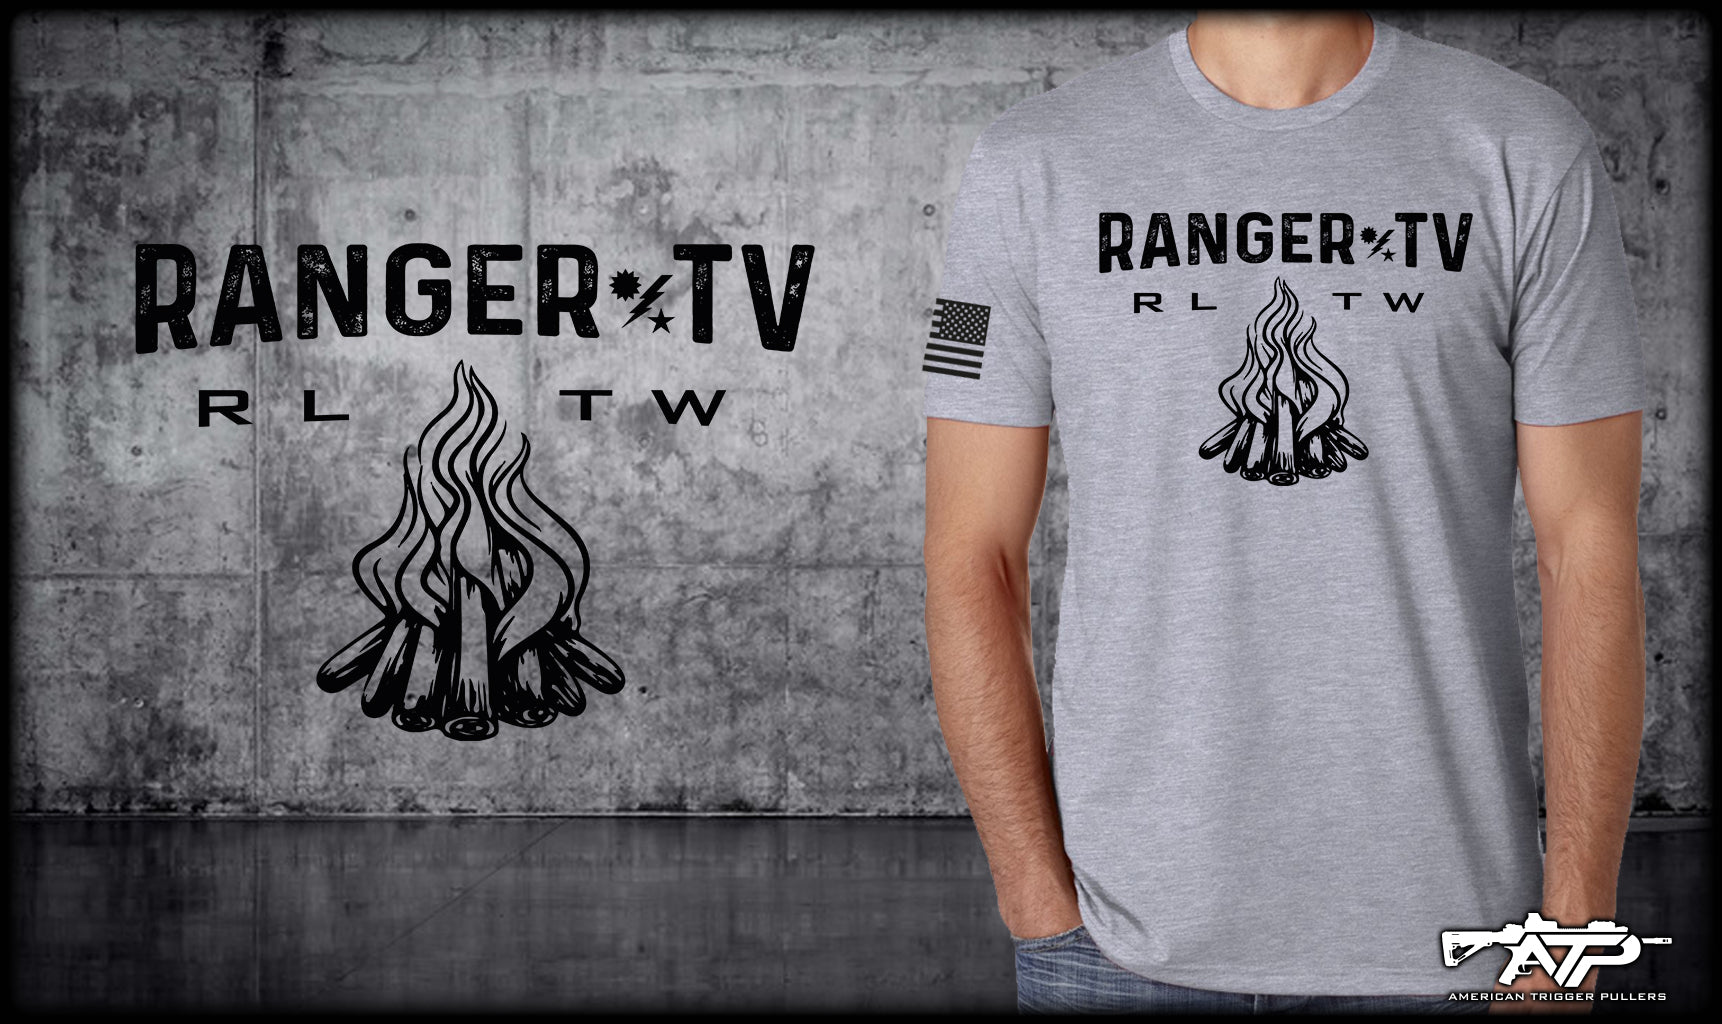 Ranger TV RLTW